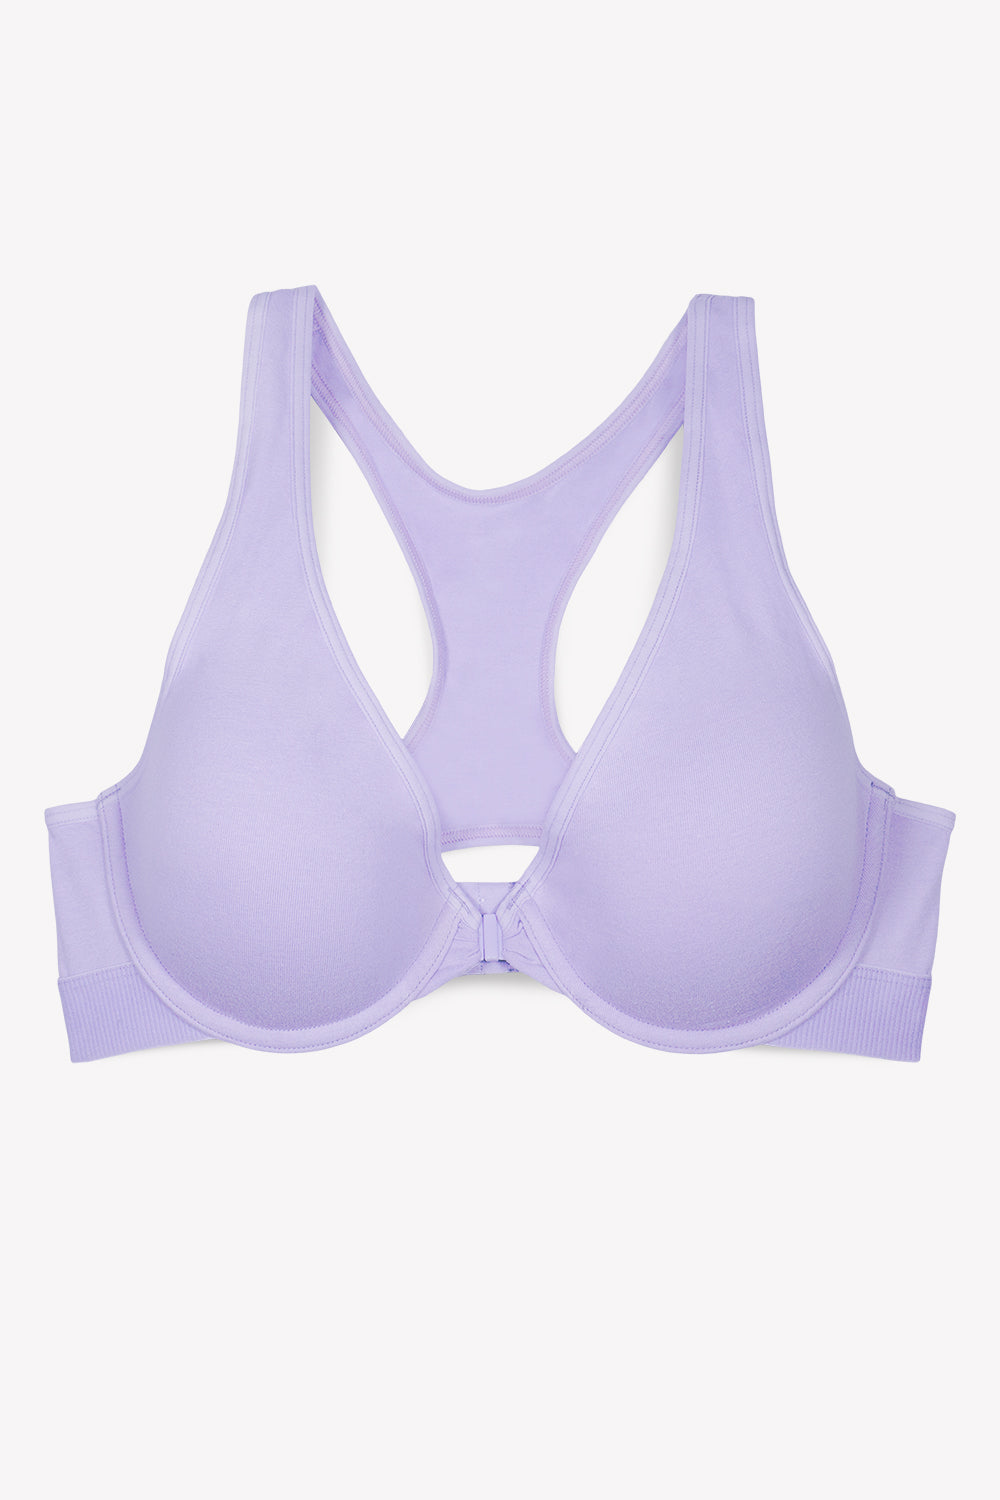 Smart & Sexy Women's Comfort Cotton Scoop Neck Unlined Underwire Bra Lilac  Iris 42c : Target